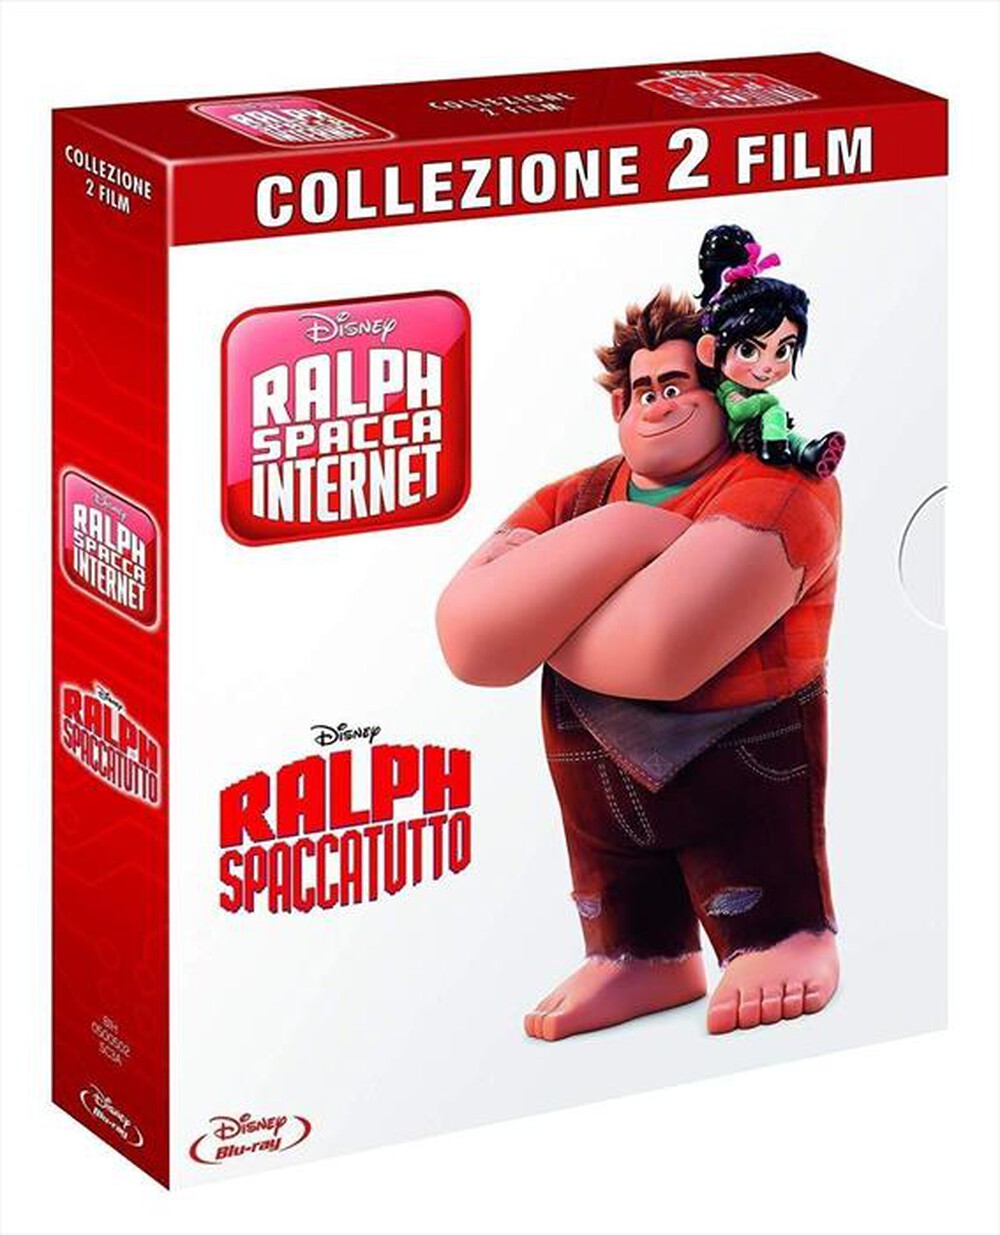 "WALT DISNEY - Ralph Spaccatutto / Ralph Spacca Internet (2 Blu"